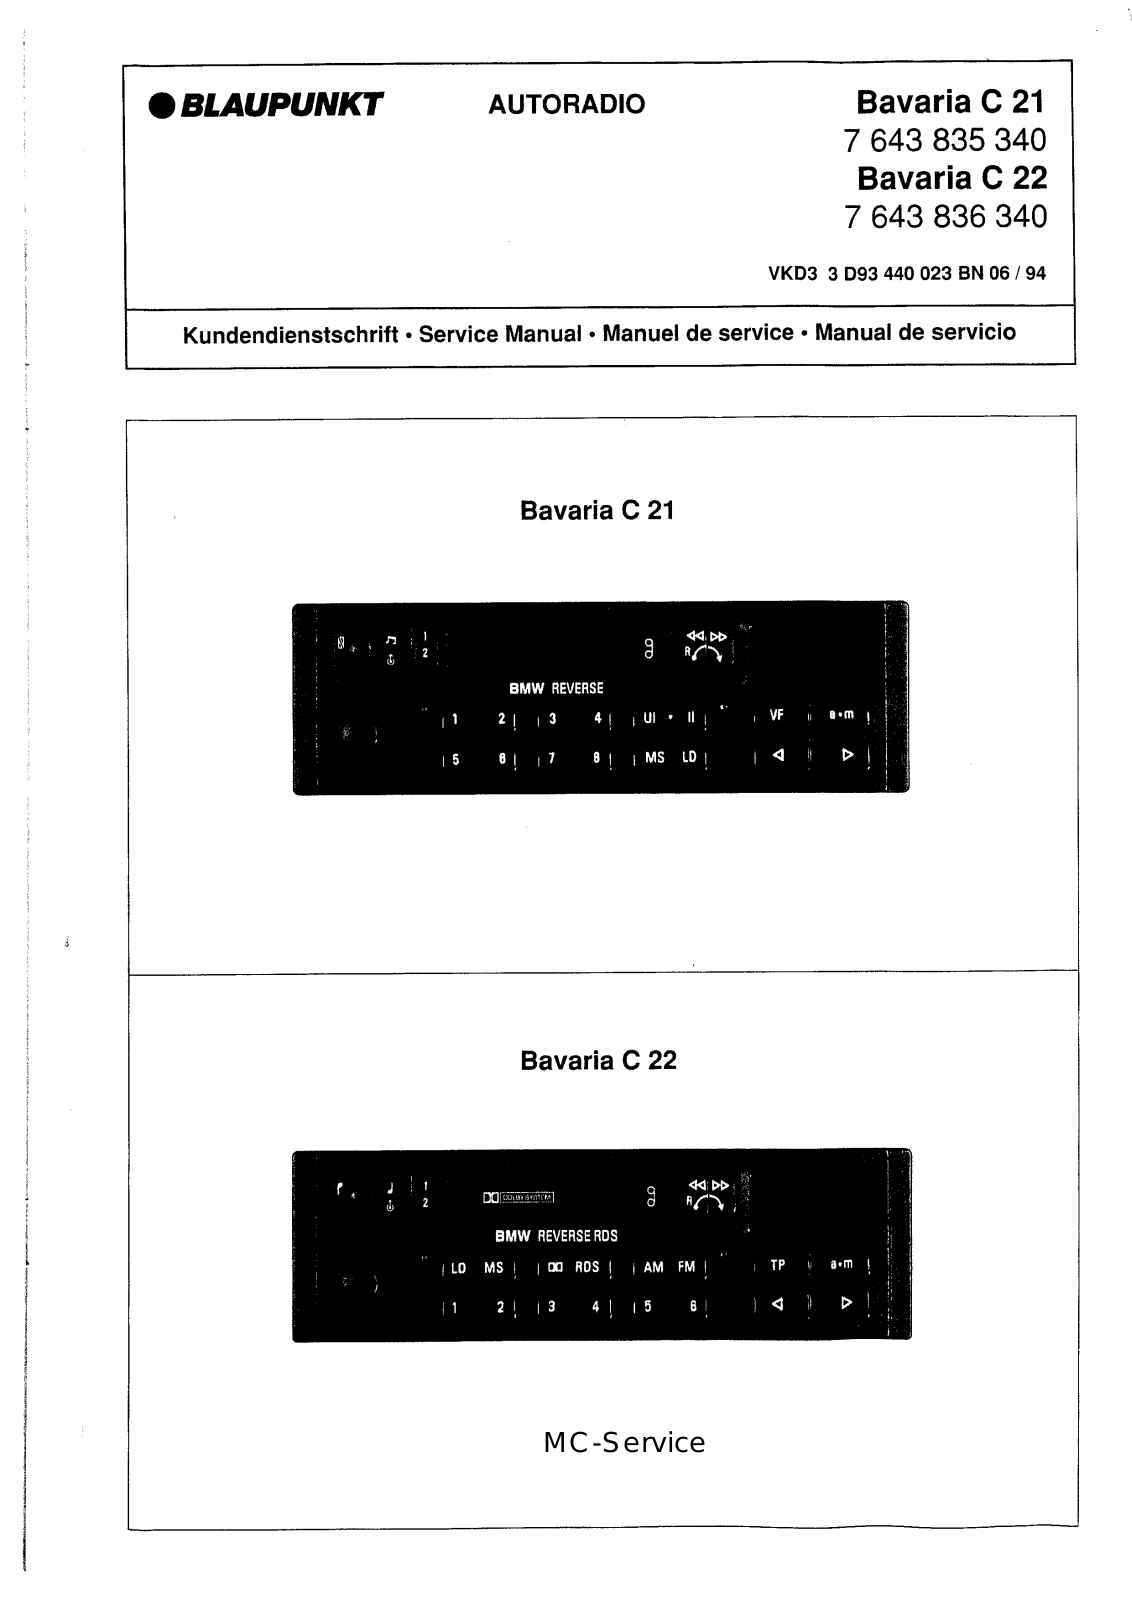 Blaupunkt Bavaria C 21, Bavaria C 22 Service Manual